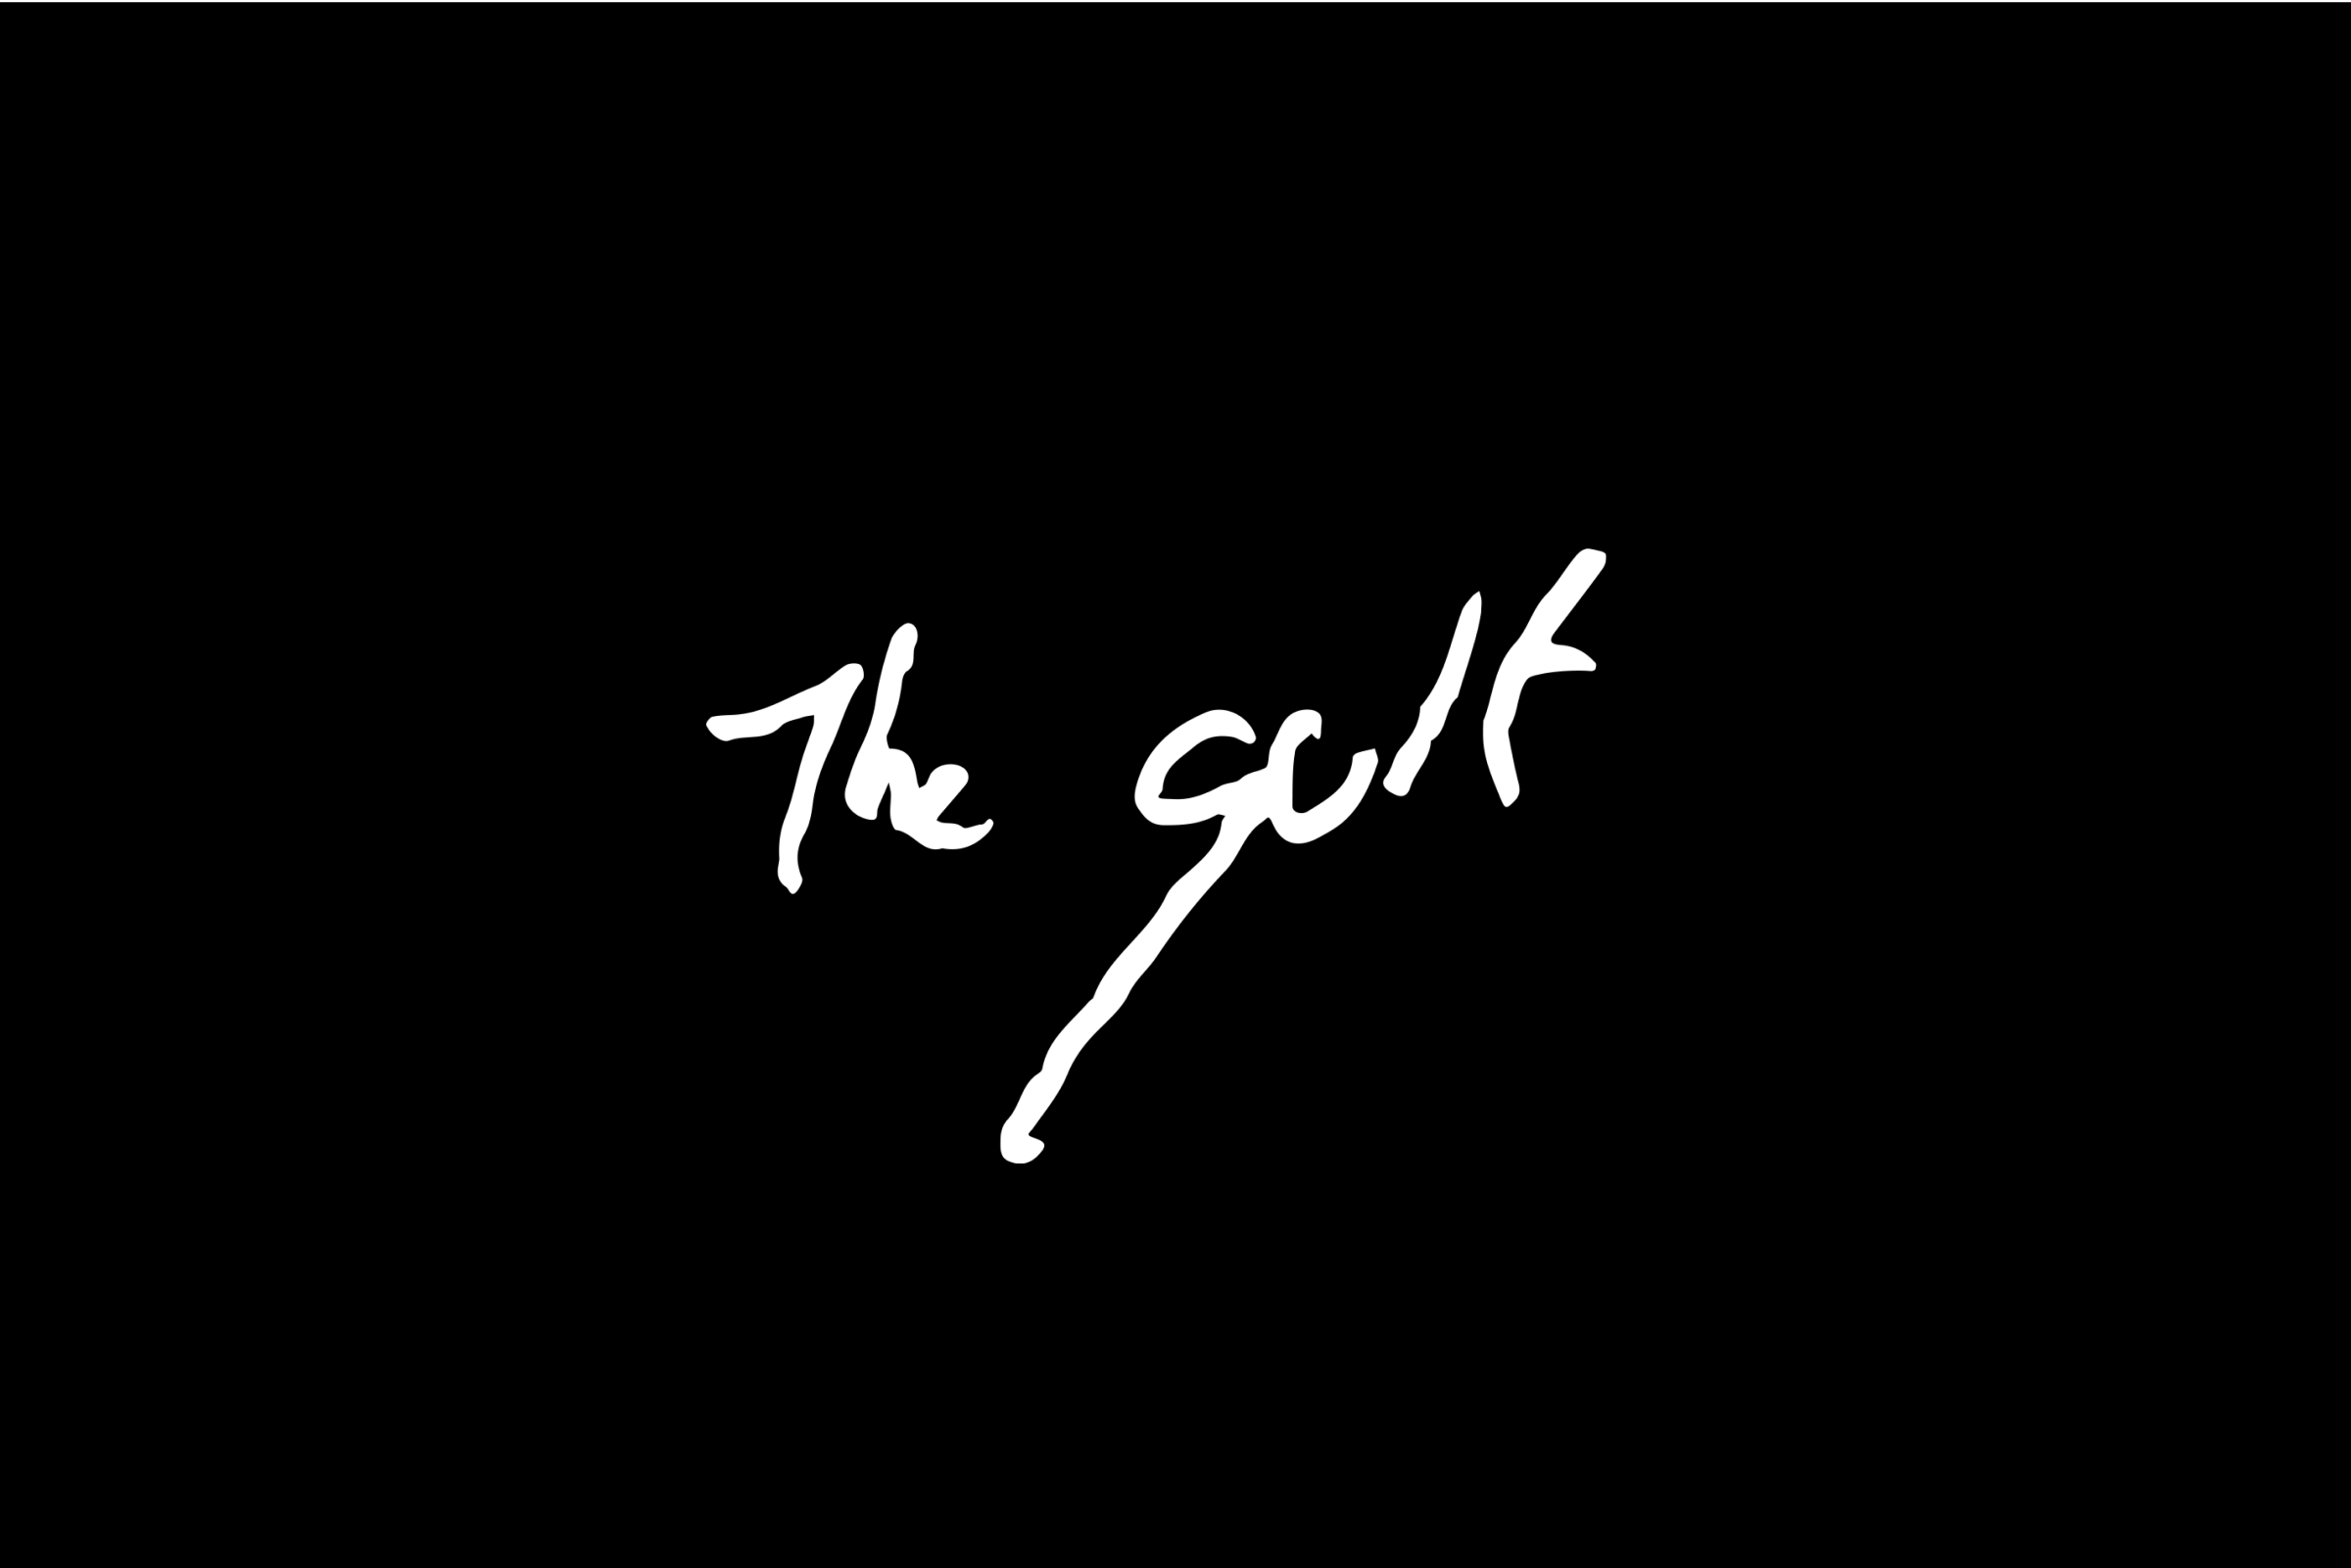 simon-p-coyle-branding-logo-design-2014-the-gulf